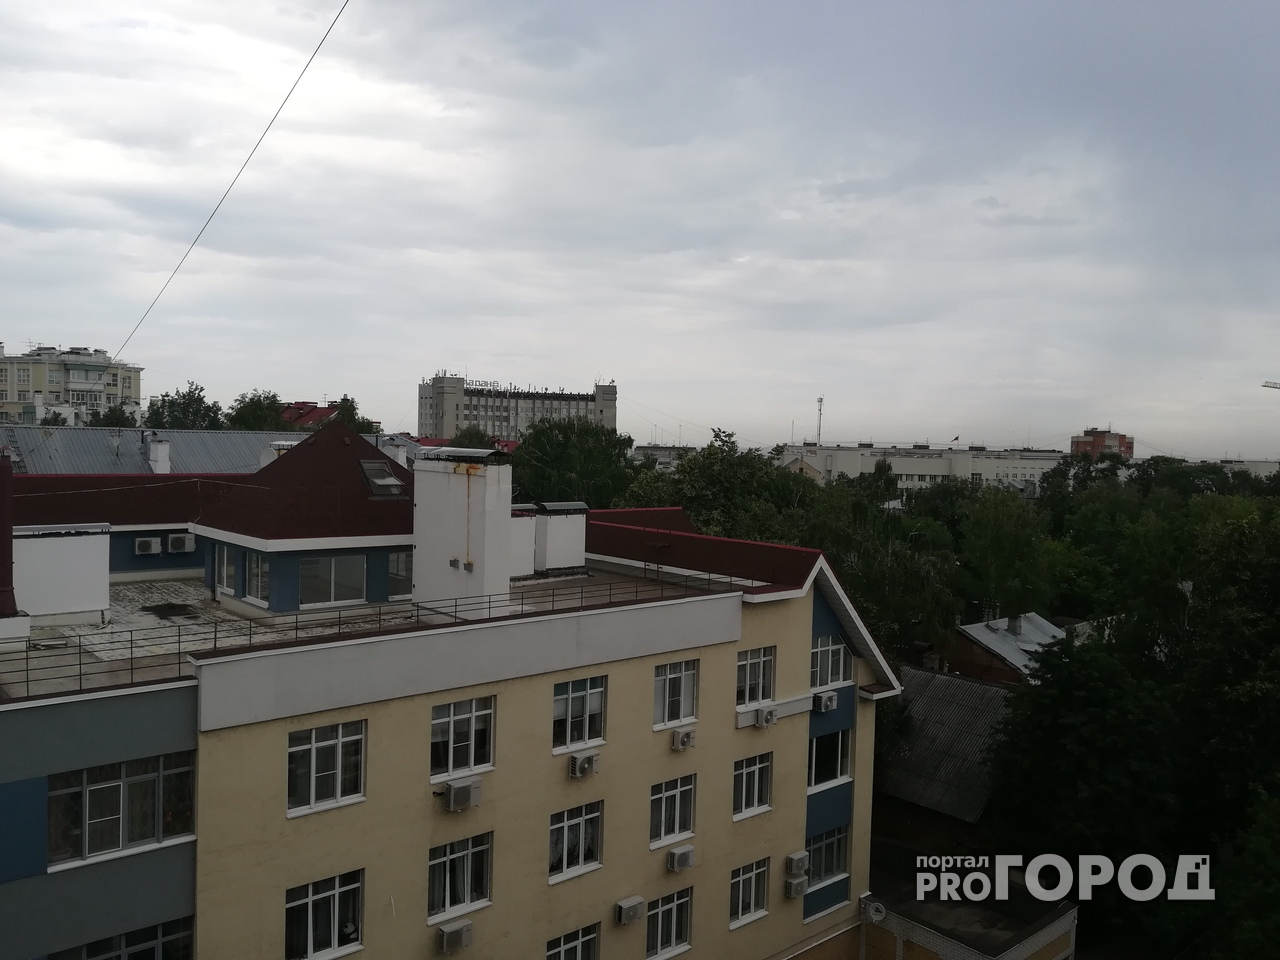 Прогноз погоды в Нижегородской области на пятницу, 28 сентября